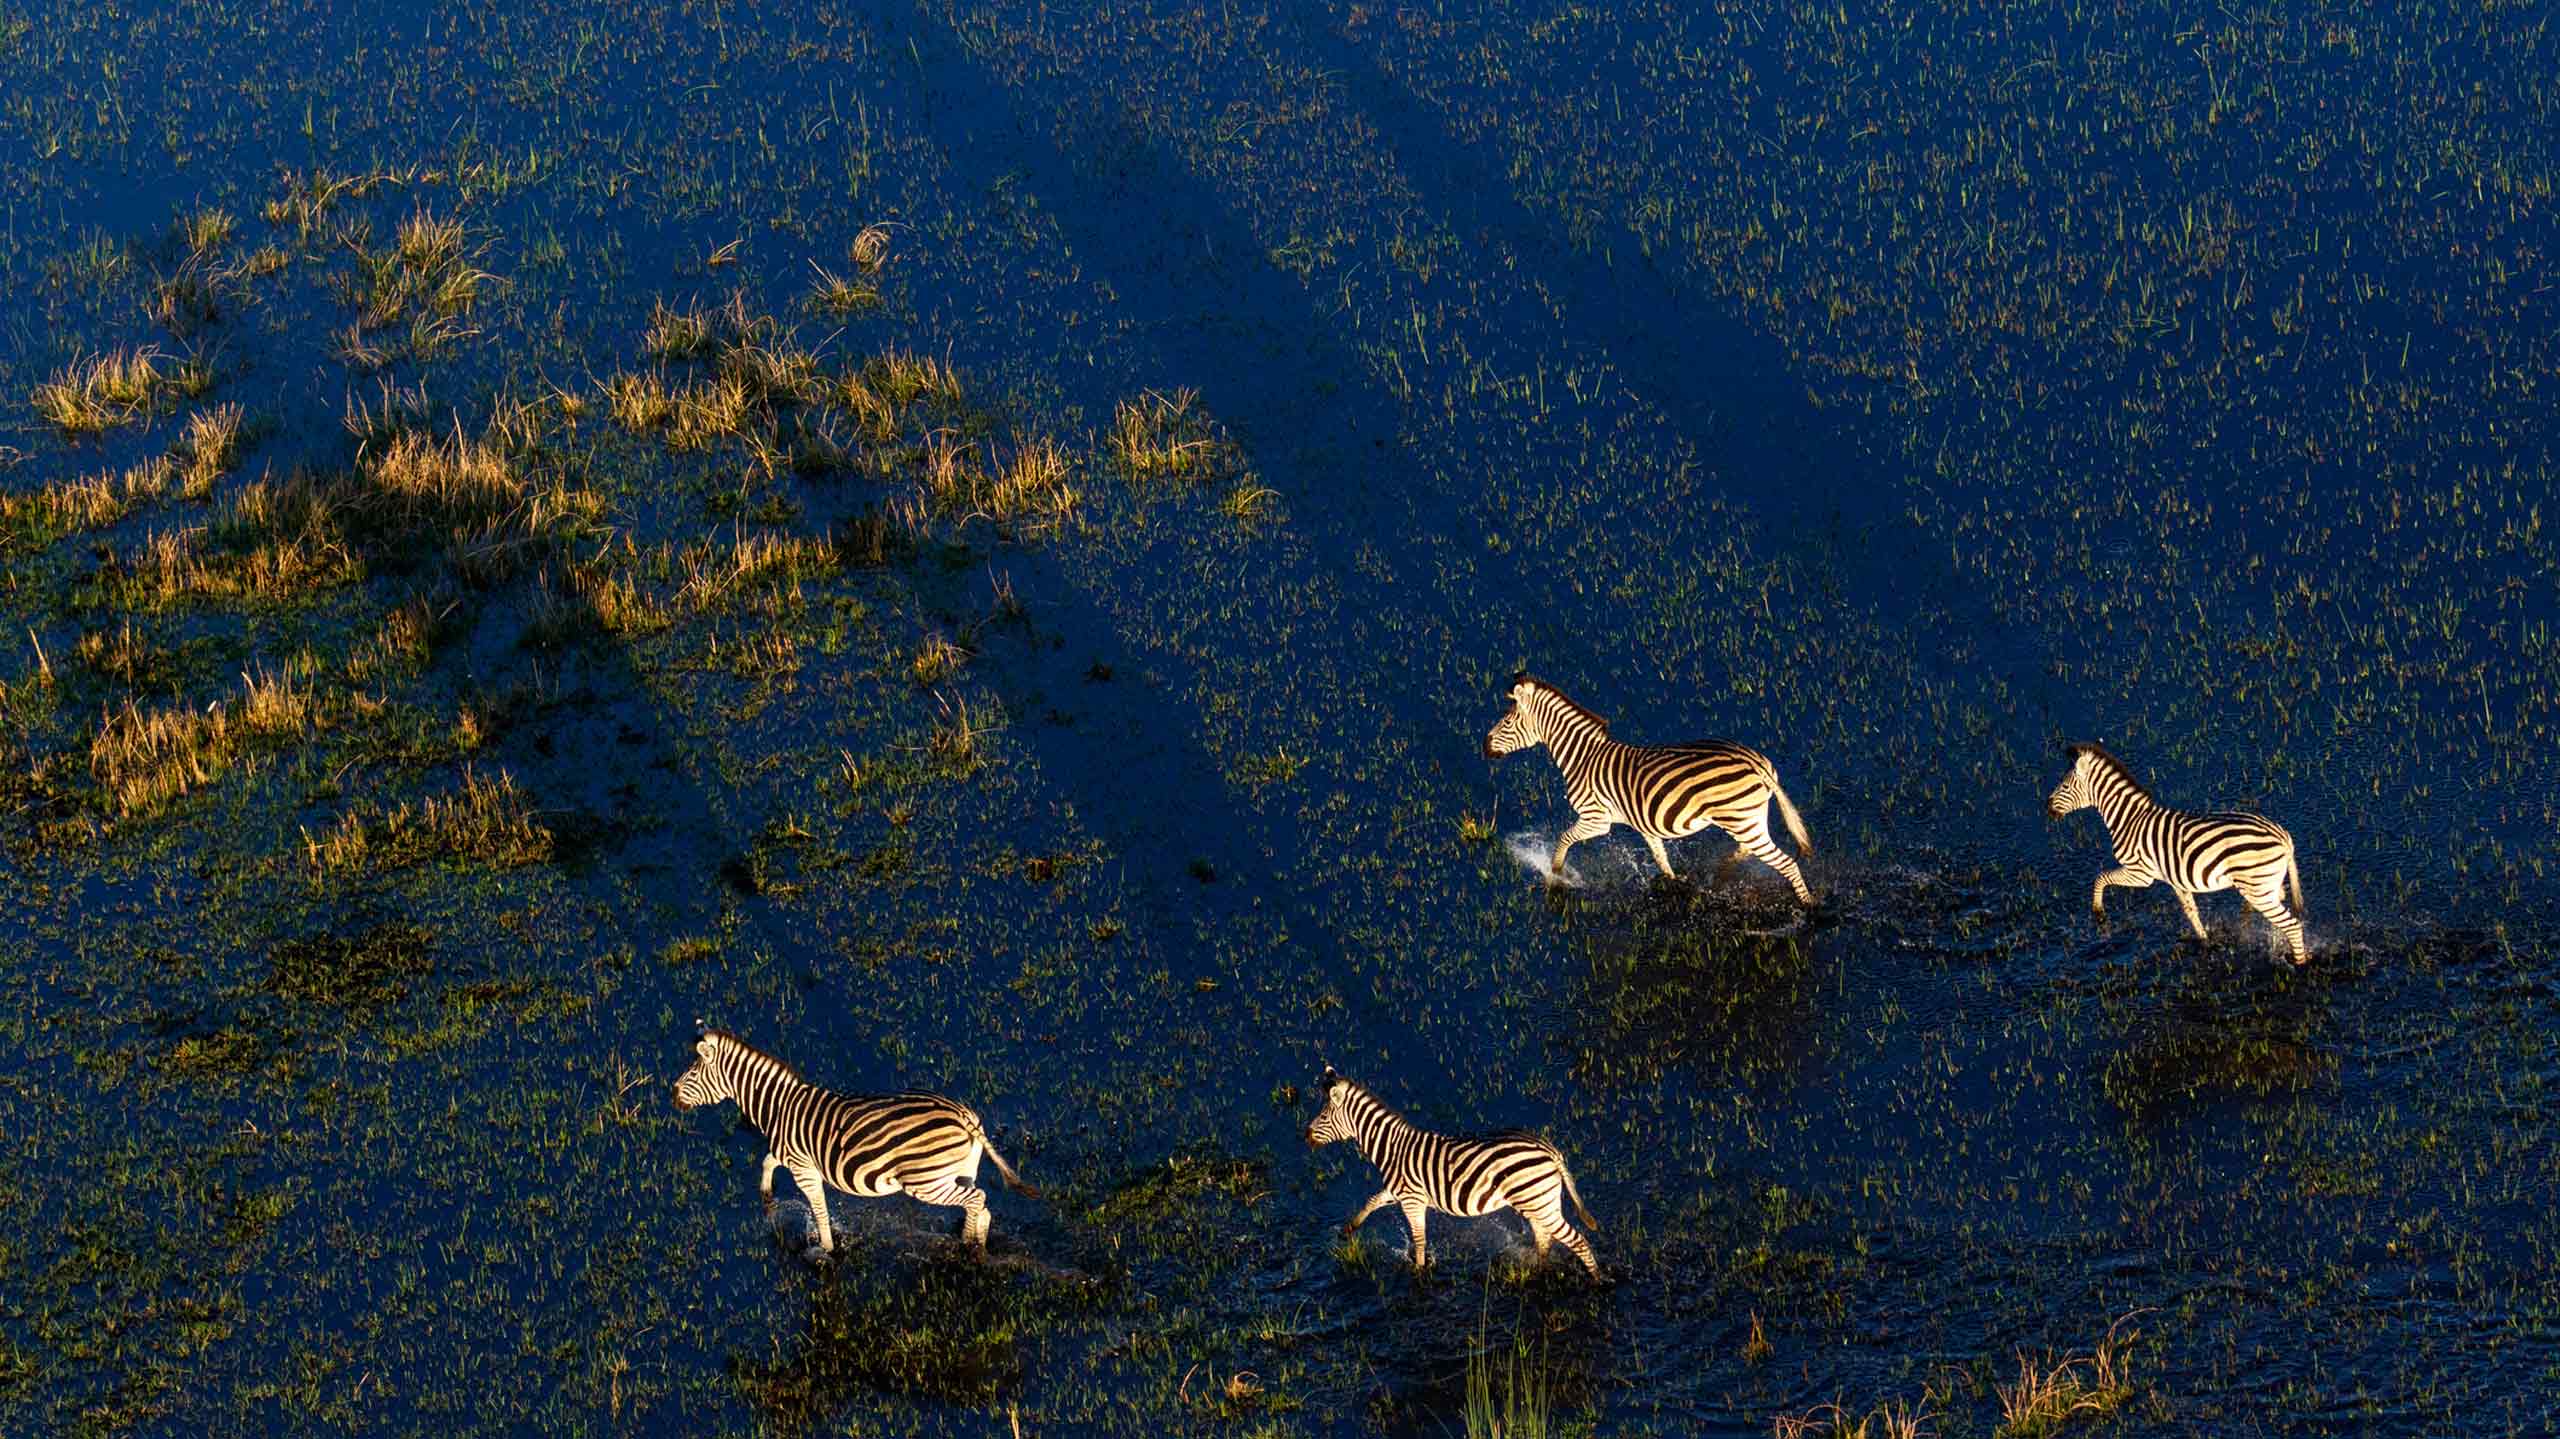 Aerial view of herd of Zebras in Okavango Delta, Botswana